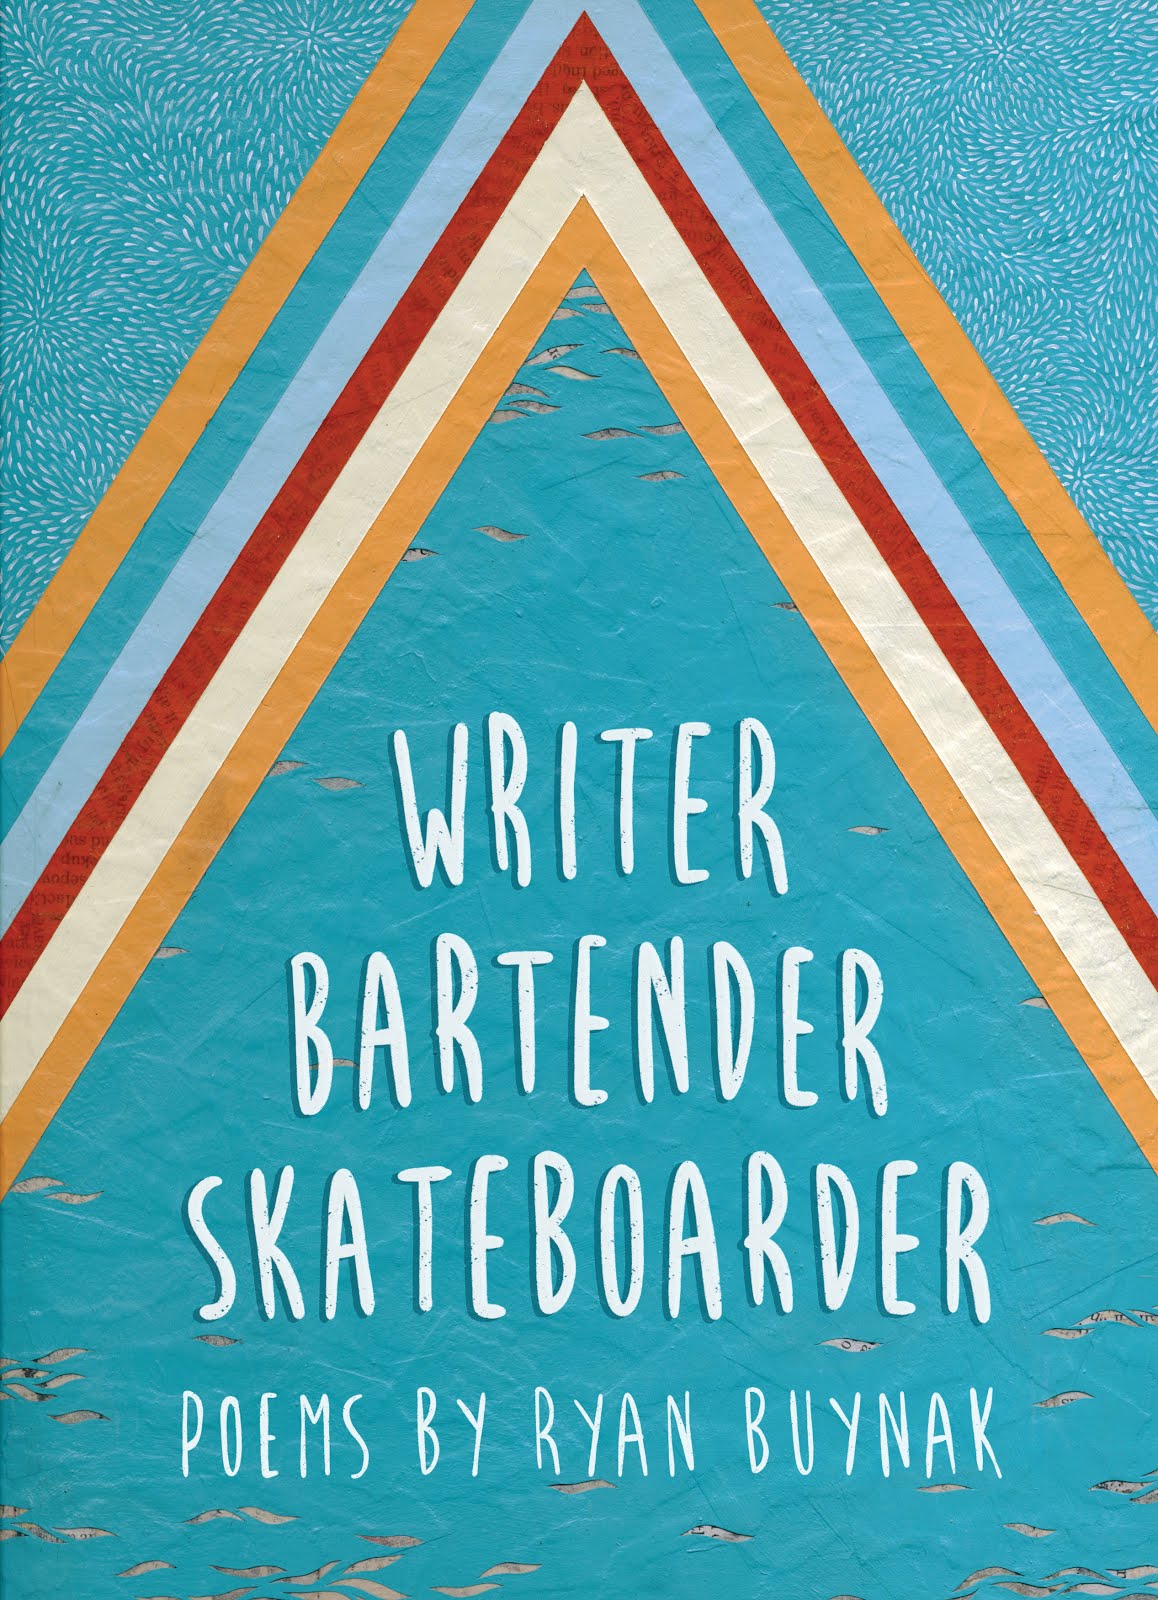 Writer, Bartender, Skateboarder